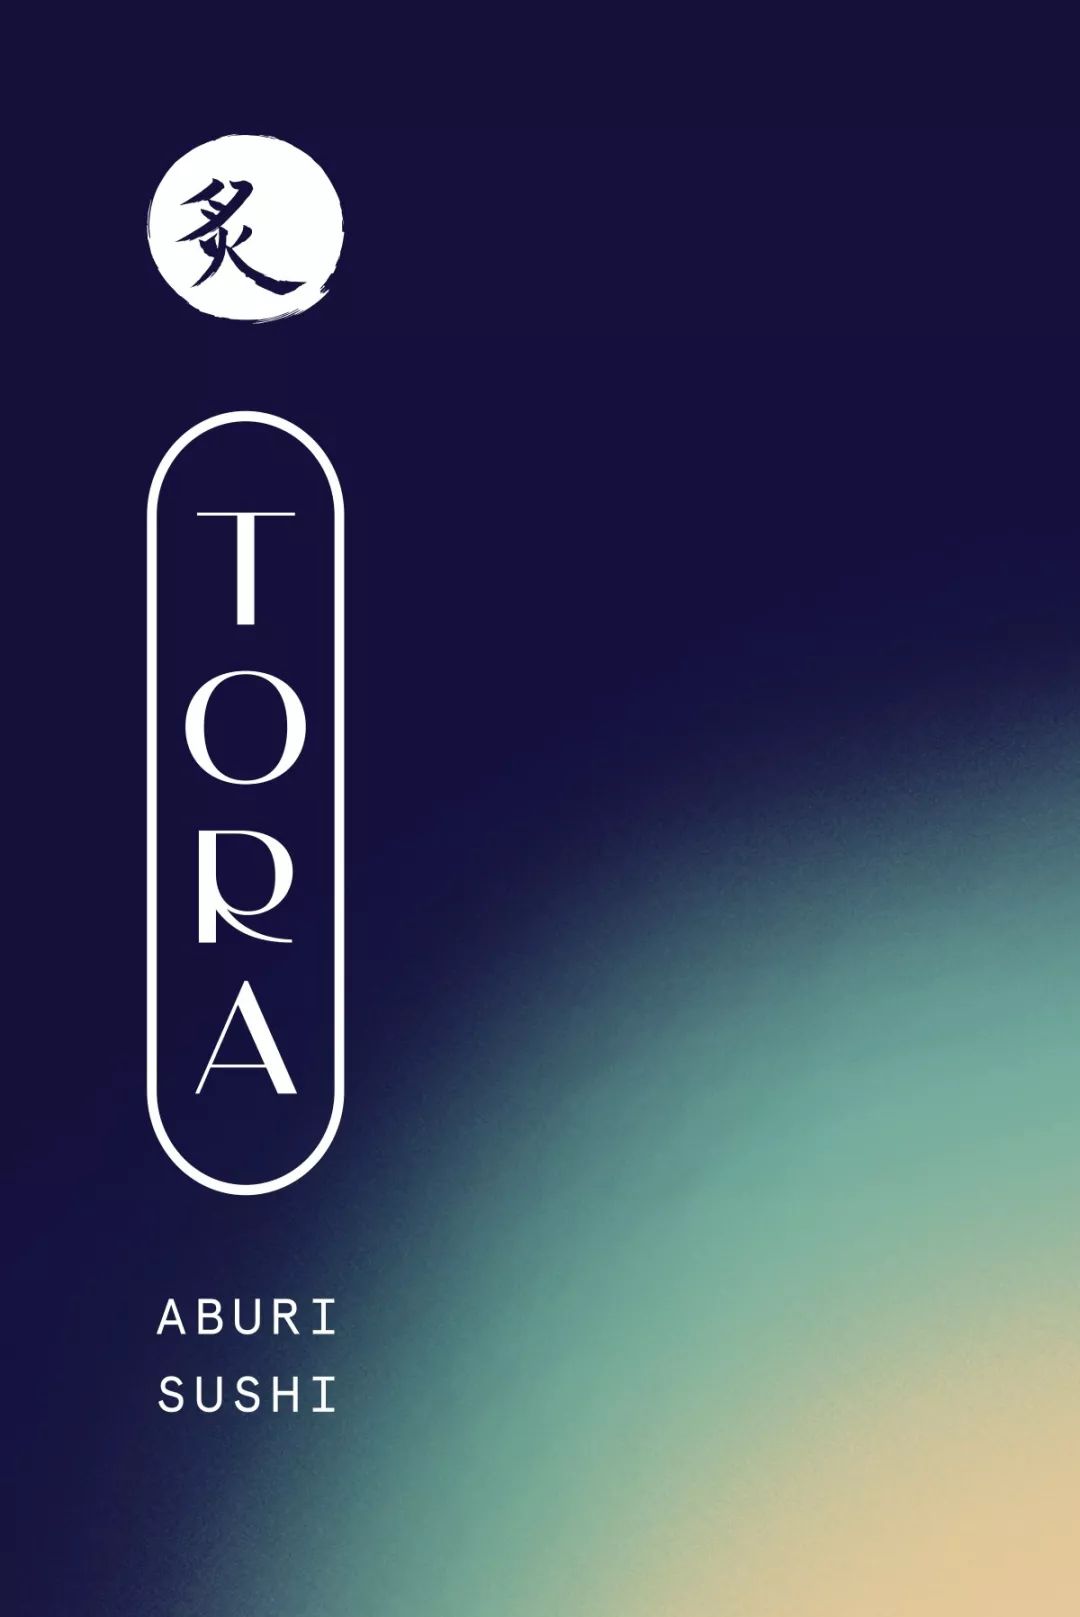 Aburi Tora寿司店品牌形象设计